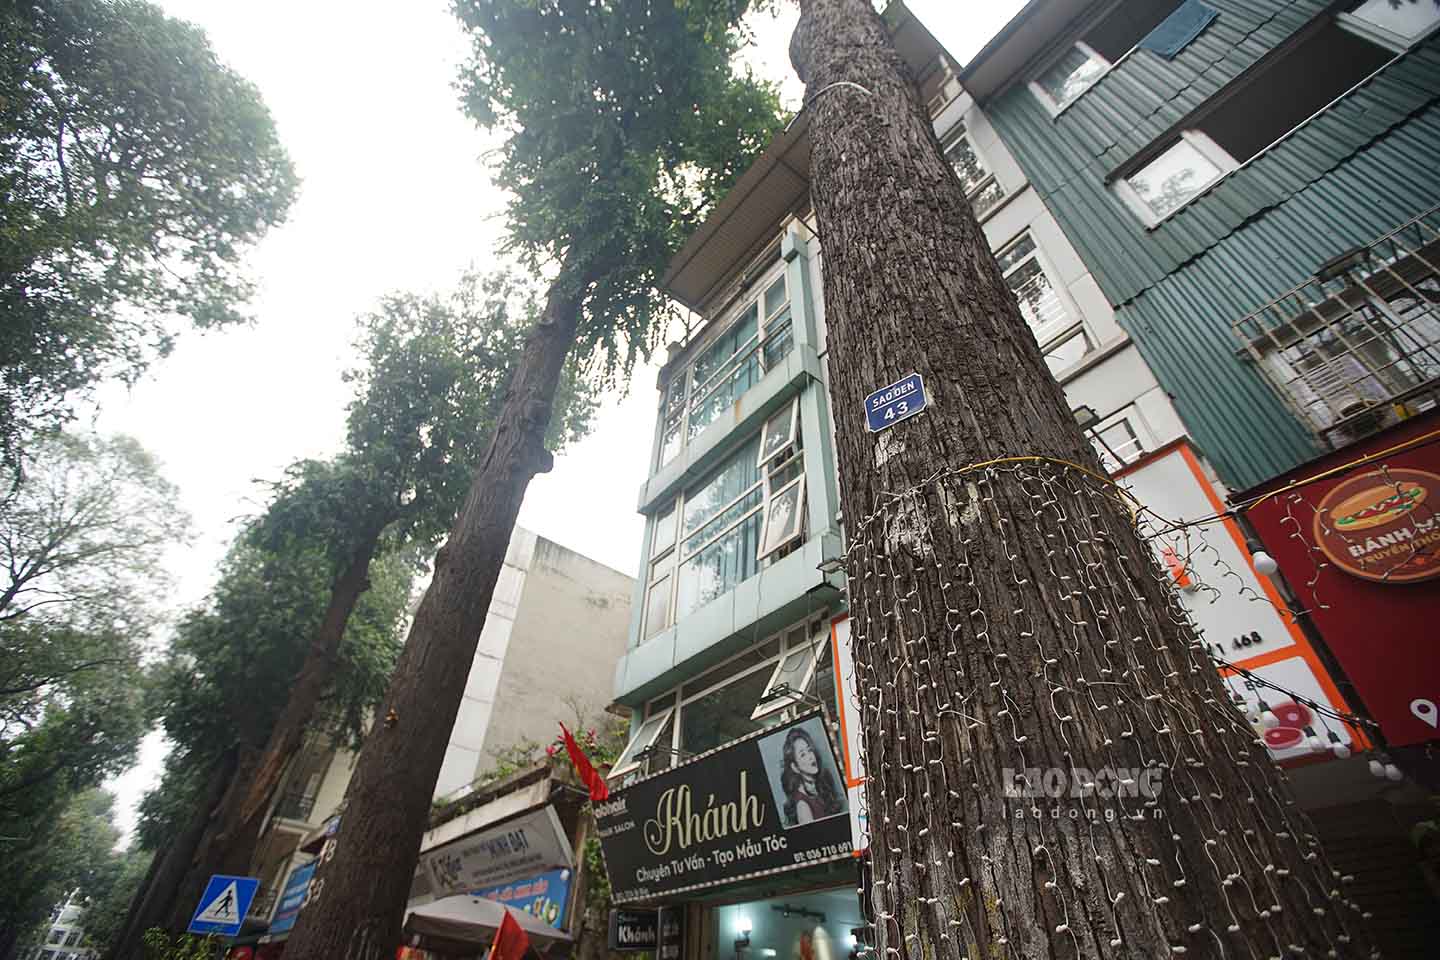 Chủ tịch UBND TP Hà Nội đã giao công an thành phố kiểm tra xác minh làm rõ, trả lời đầy đủ về quy trình chặt hạ cây sao đen và có việc xây nhà mới thì cây chết hay không. Nếu có sai phạm thì phải xử lý nghiêm theo quy định của pháp luật. Việc này được giao hoàn thành trước ngày 10.4